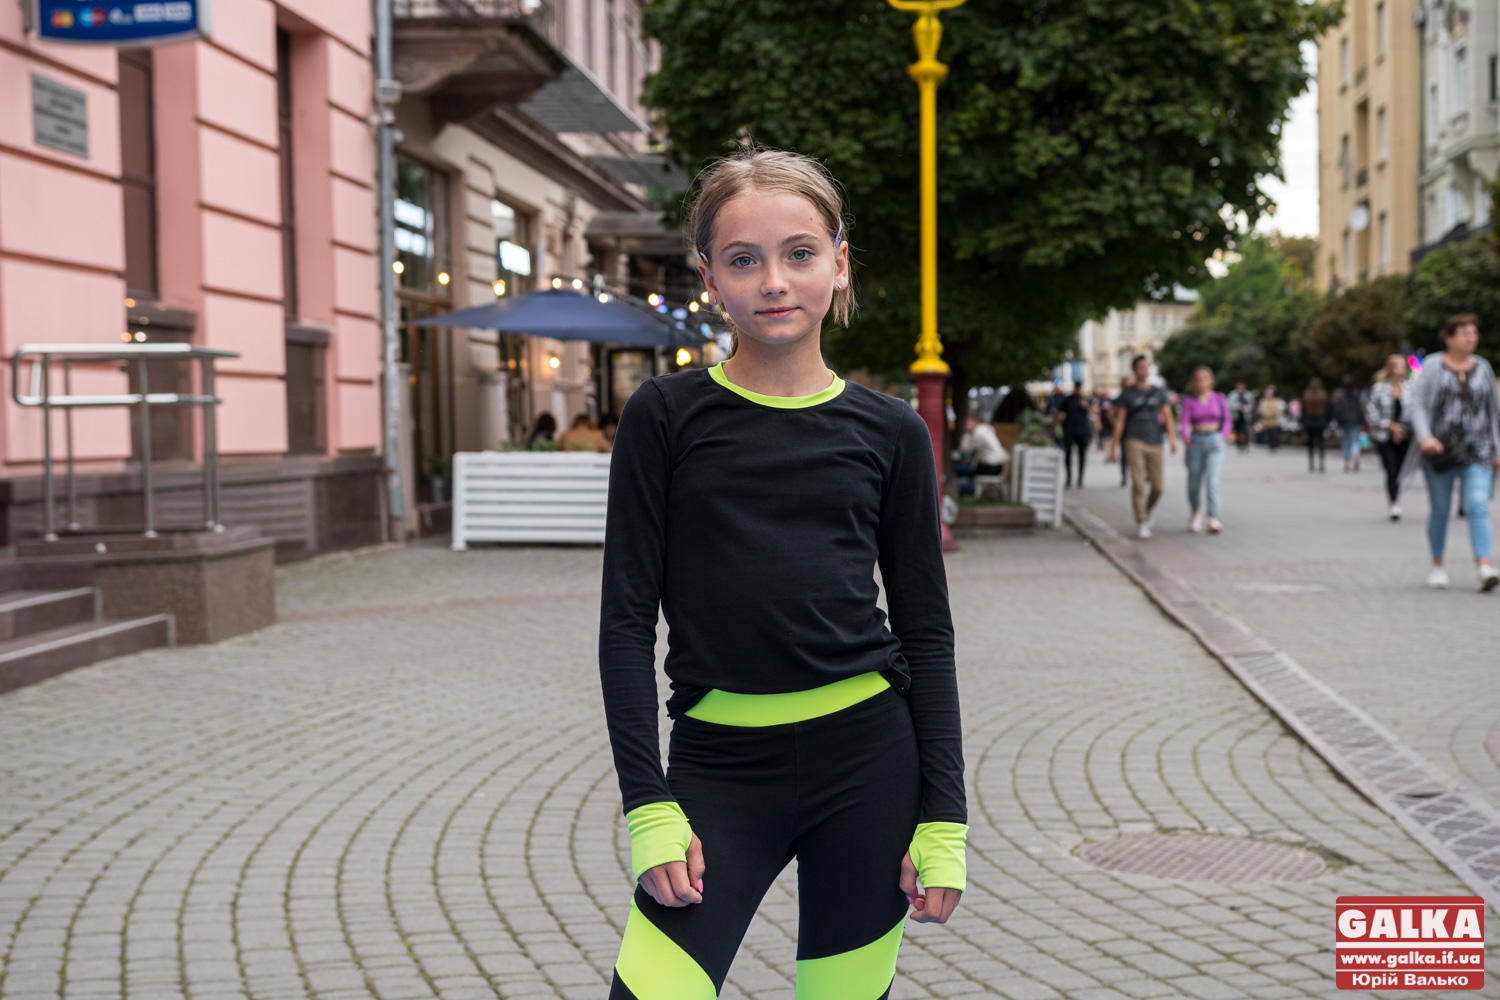 11-річна франківка танцями у середмісті зібрала для захисників 30 000 гривень (ФОТО, ВІДЕО)